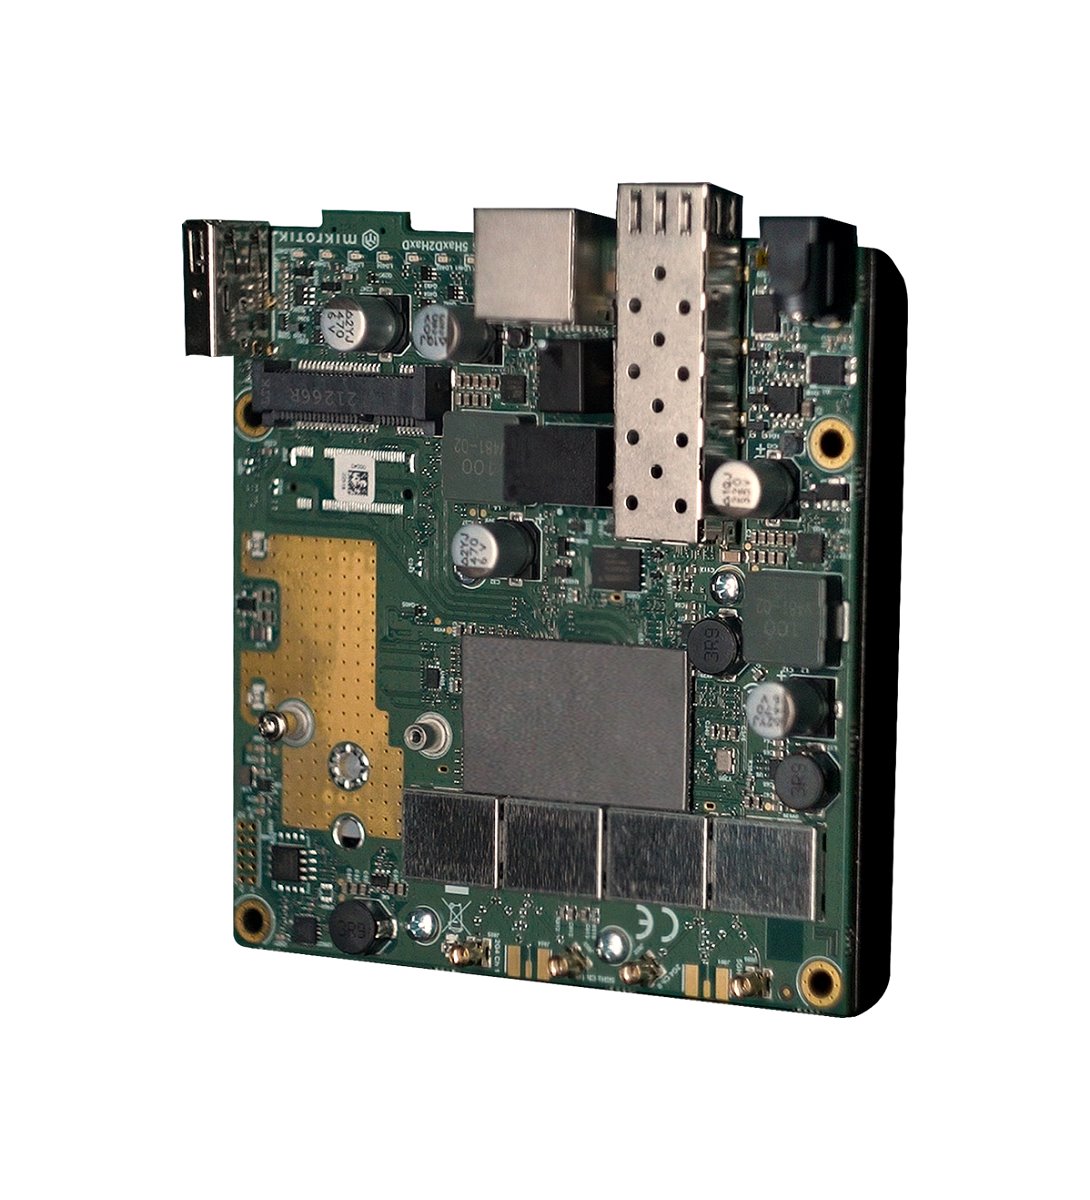 MikroTik RouterBOARD L23UGSR-5HaxD2HaxD, dual-band WiFi6, 4x MMCX, RouterOS L4